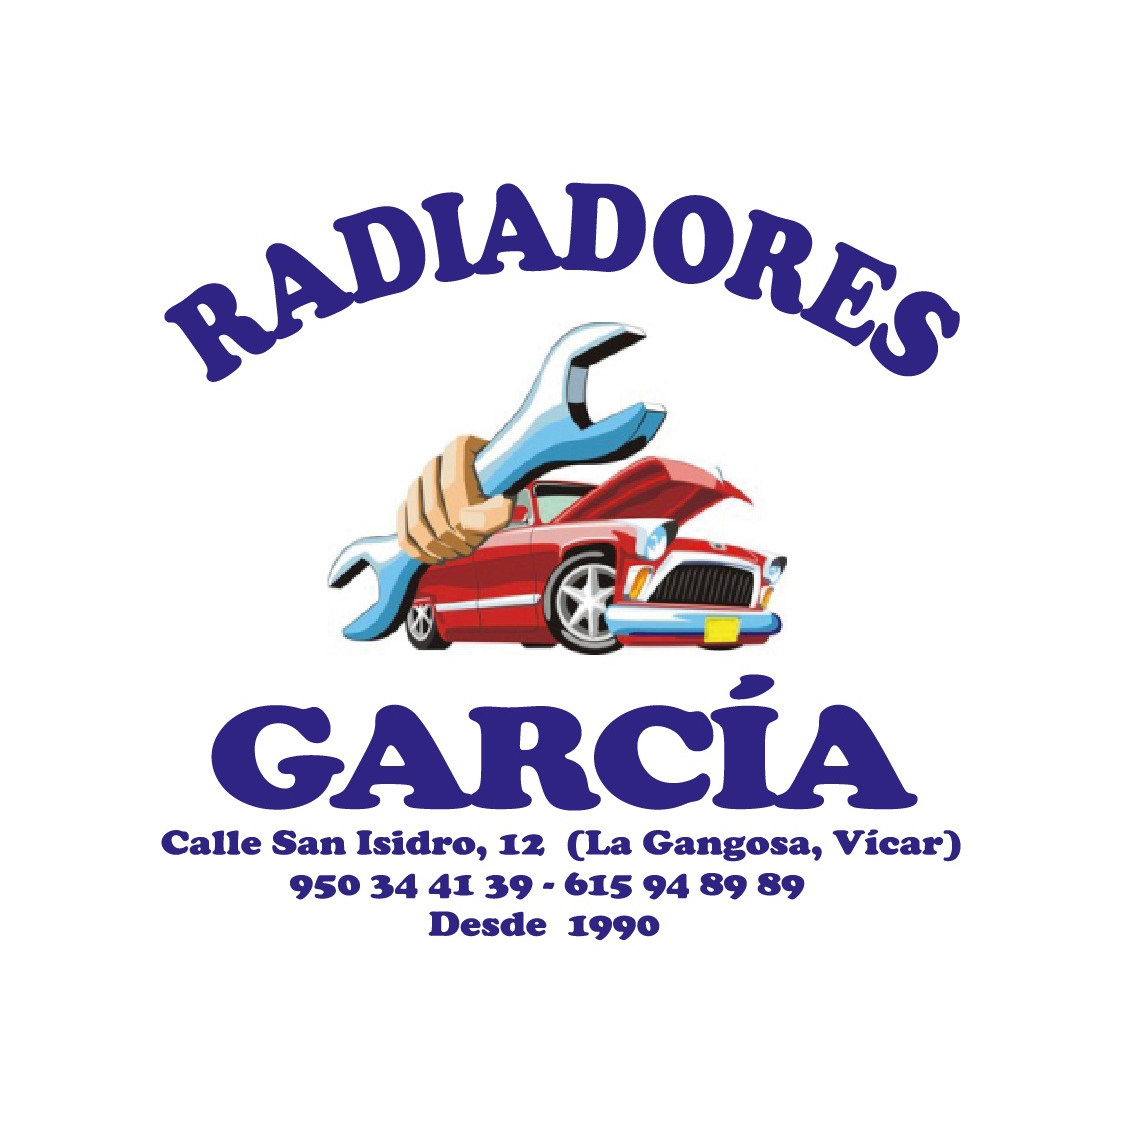 Taller de Radiadores García Logo